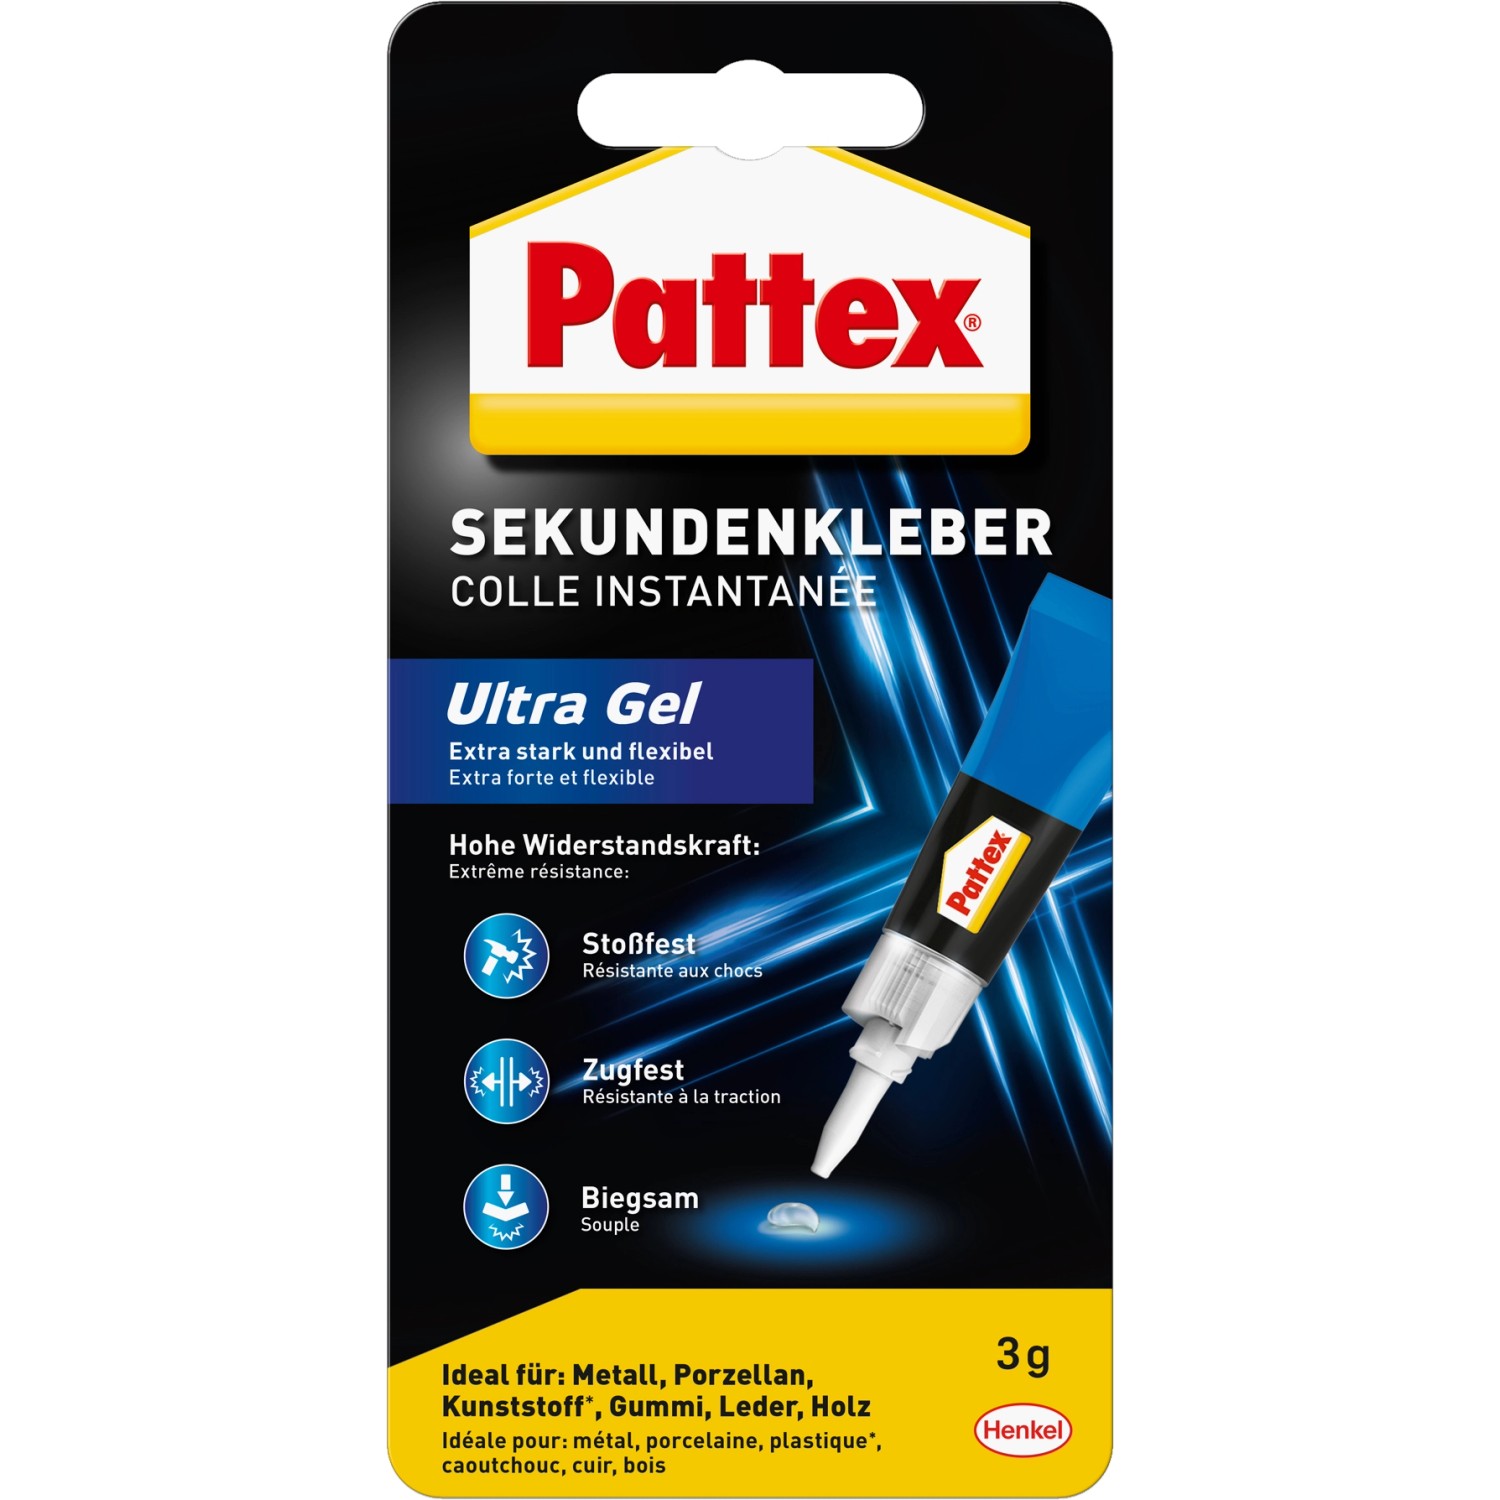 Pattex Sekundenkleber Ultra Gel flexibler Alleskleber 3g